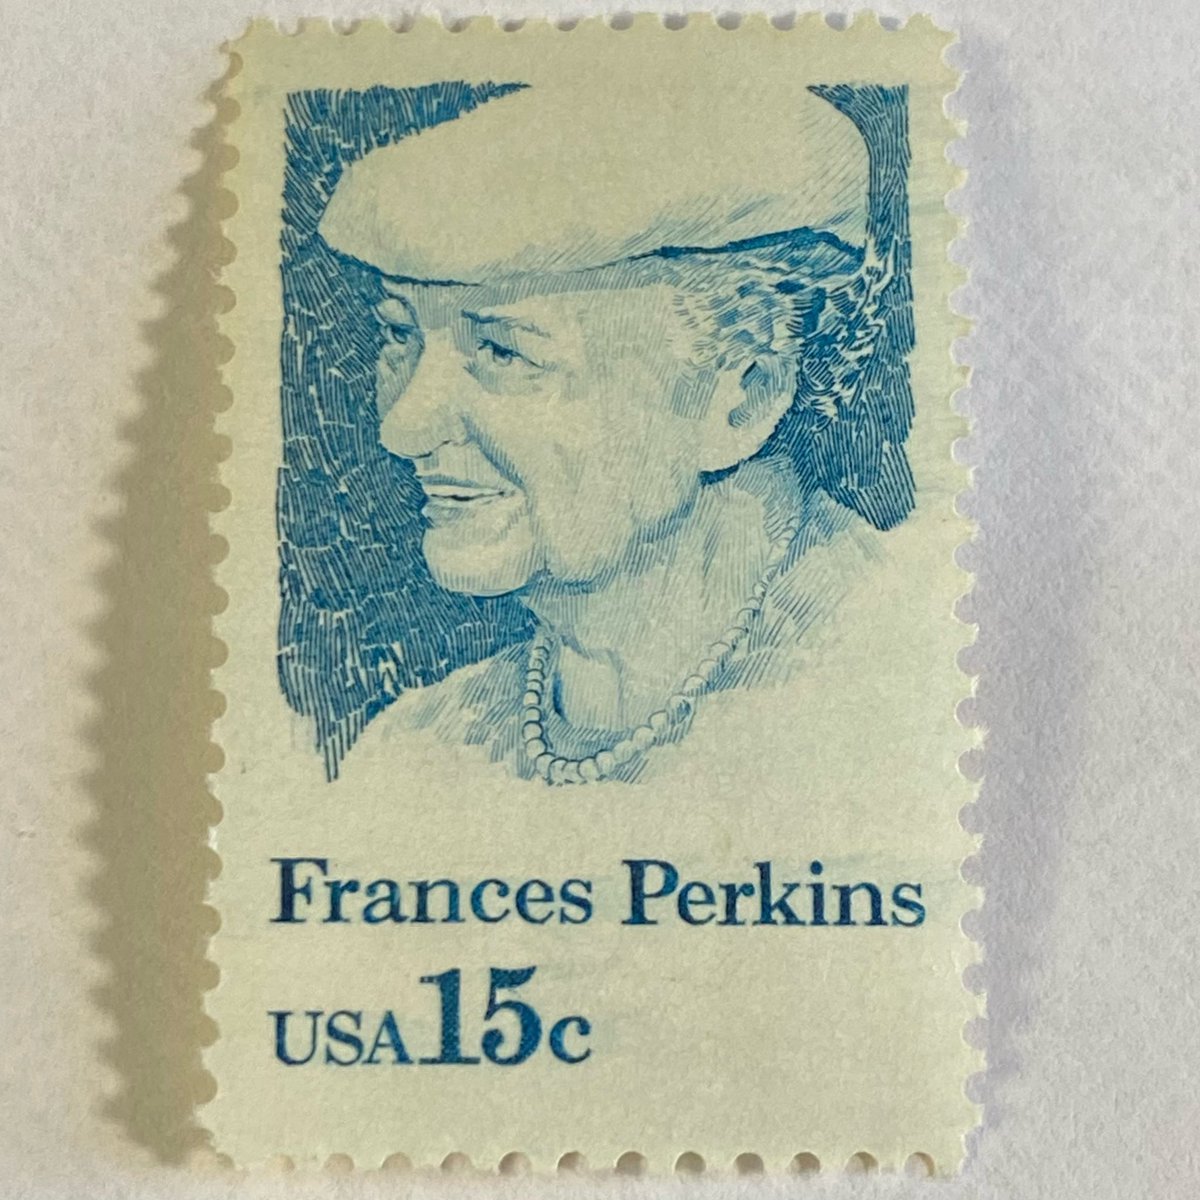 #stamps #uspsstamps #francesperkins #workersrights #secretaryoflabor #thenewdeal